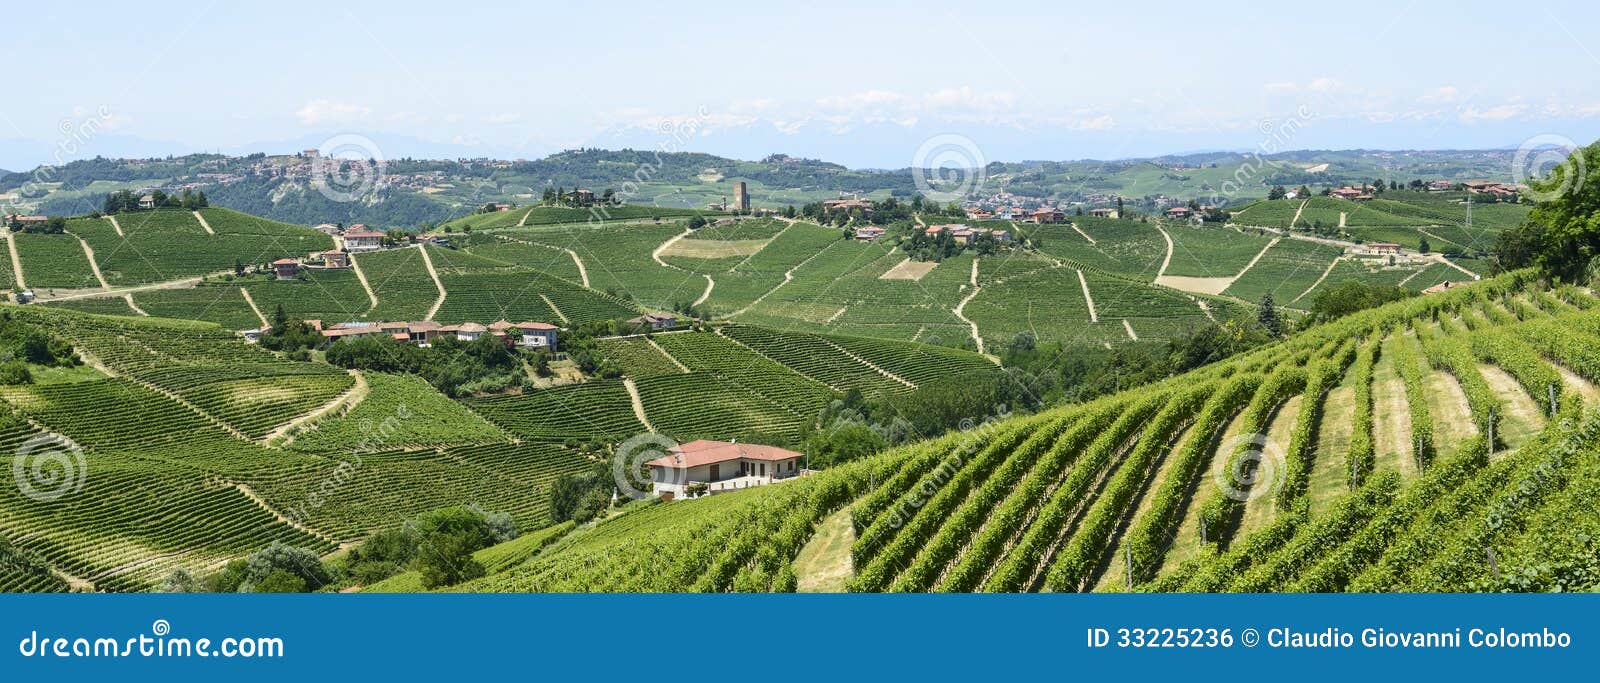 Langhe, vinhedos. Langhe (Asti, Cuneo, Piedmont, Itália) - ajardine no verão com vinhedos